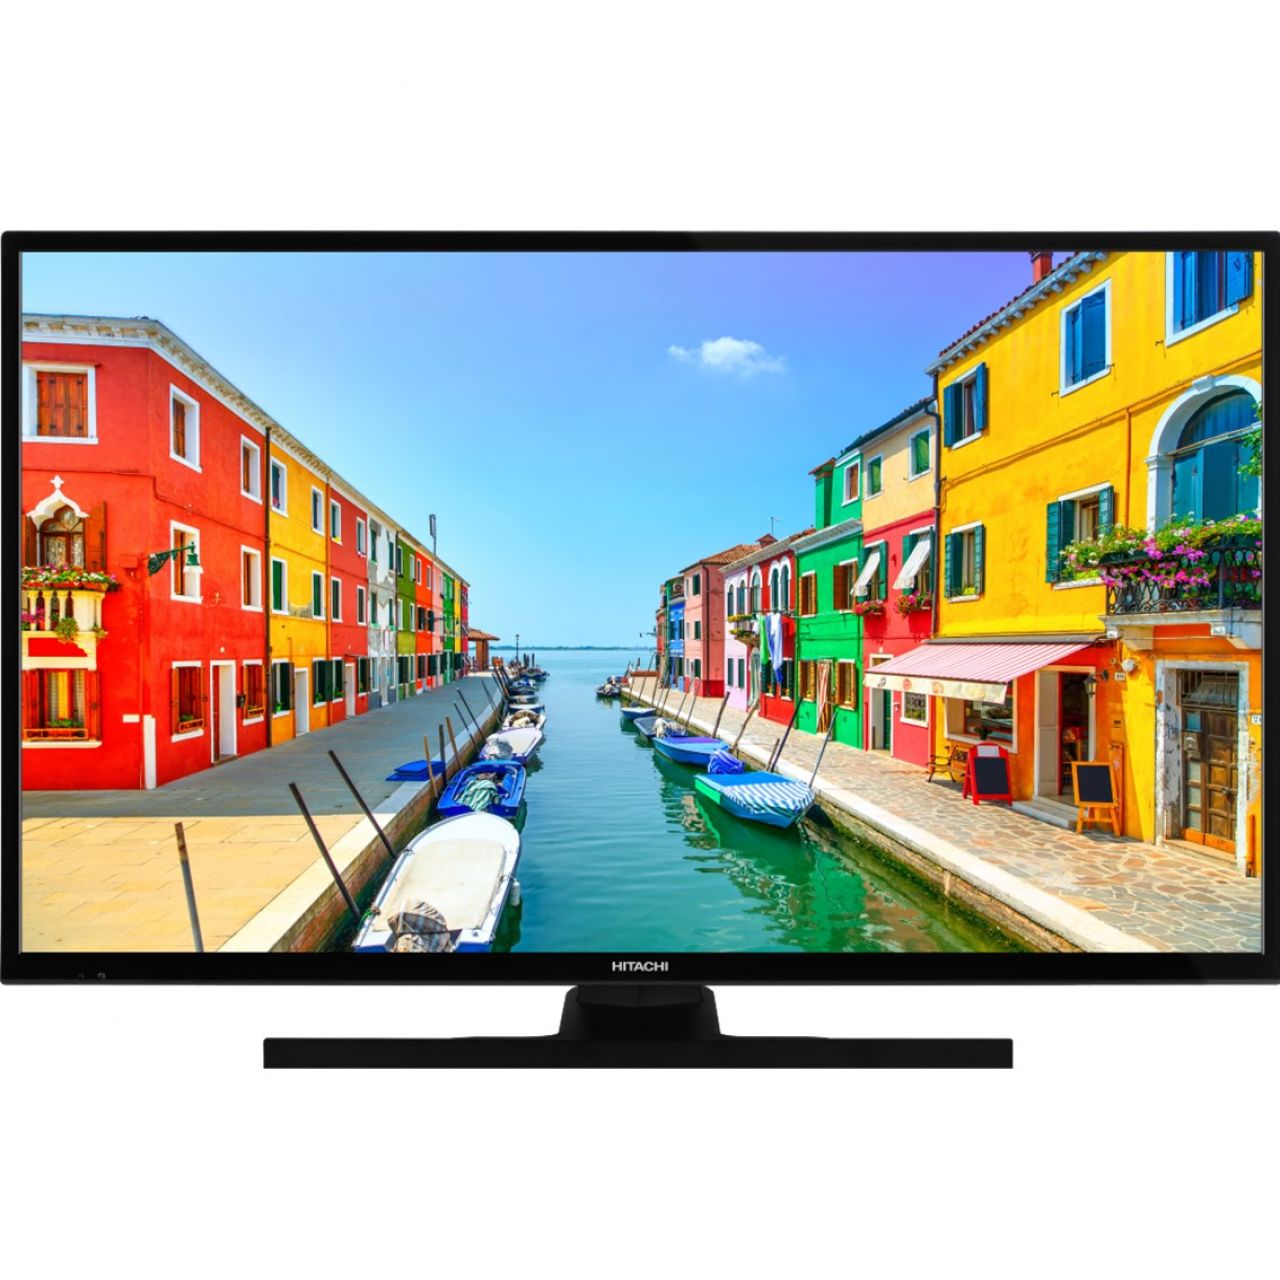 Destacada TV Hitachi LED HD 40" - 40he4200 - Smart TV